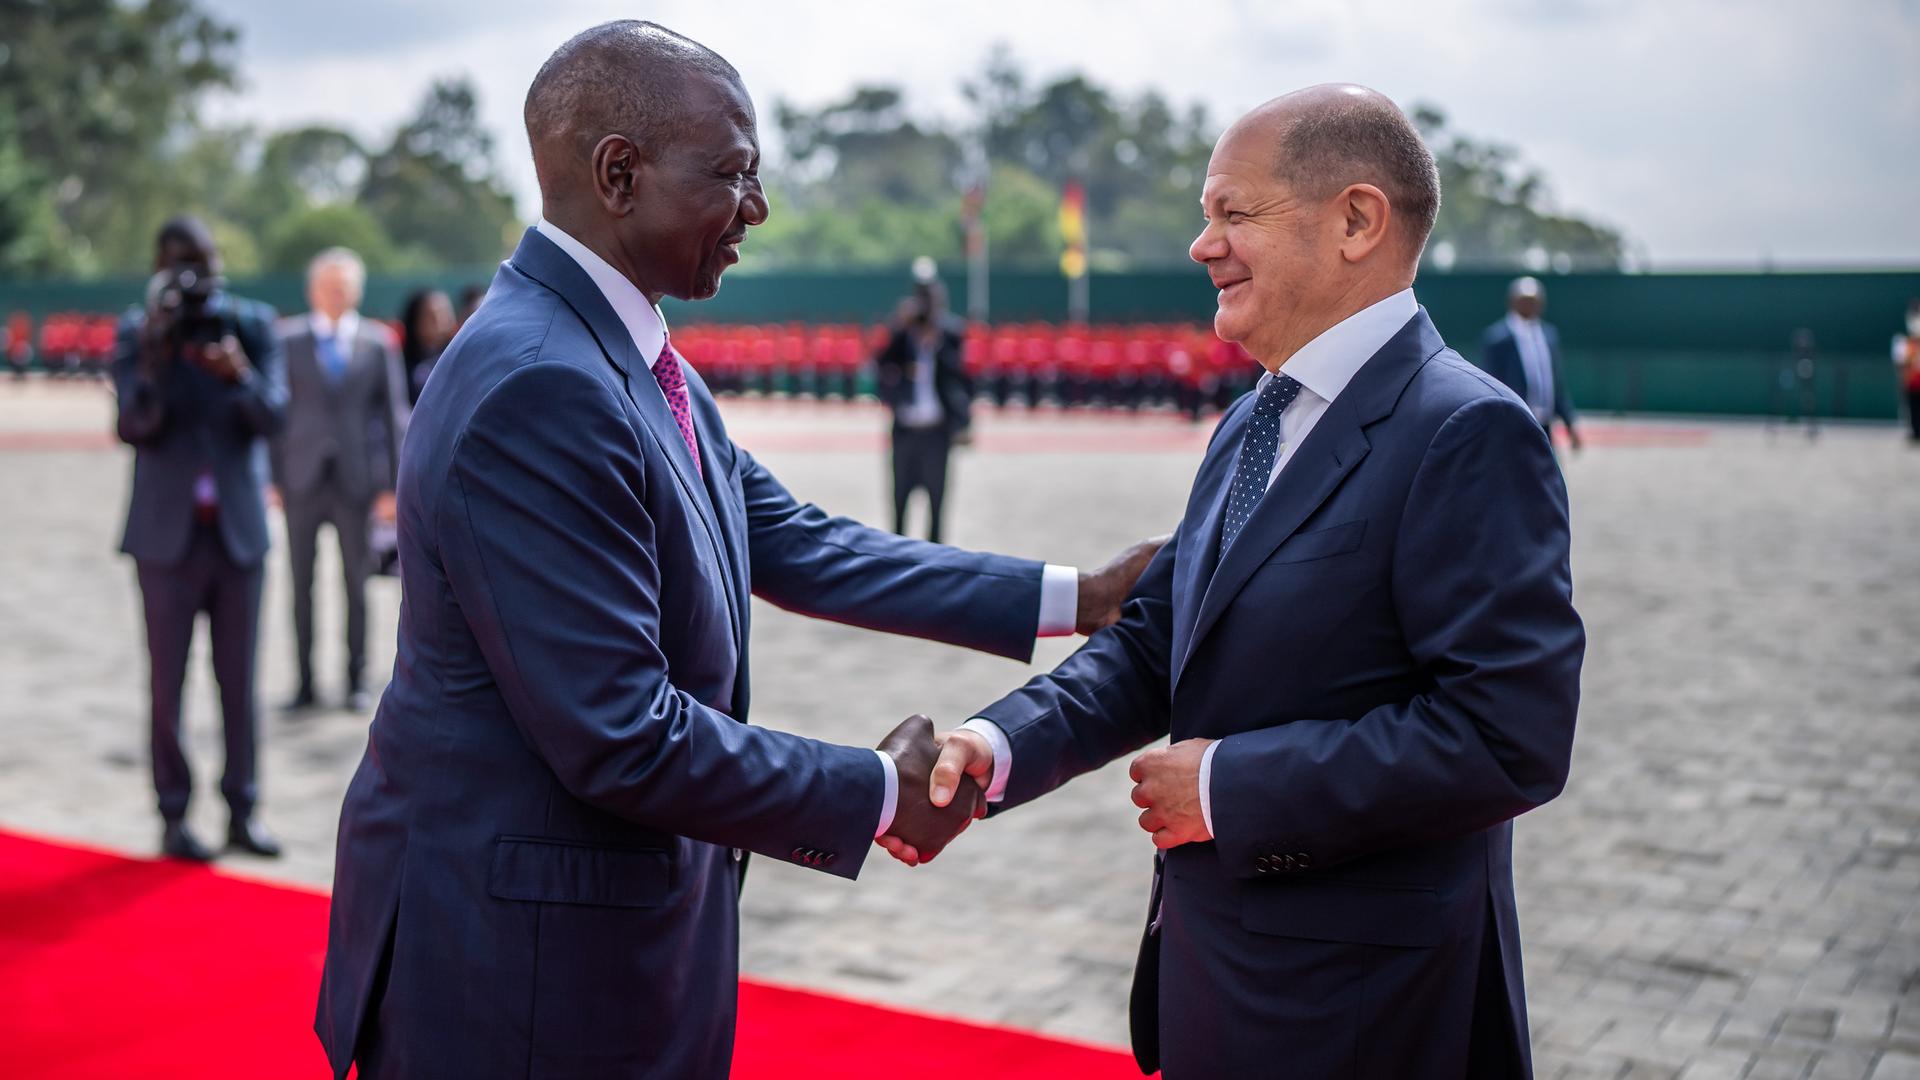 Nairobi: Bundeskanzler Olaf Scholz und William Ruto, Präsident von Kenia, schütteln sich die Hände. Sie stehen auf einem roten Teppich.